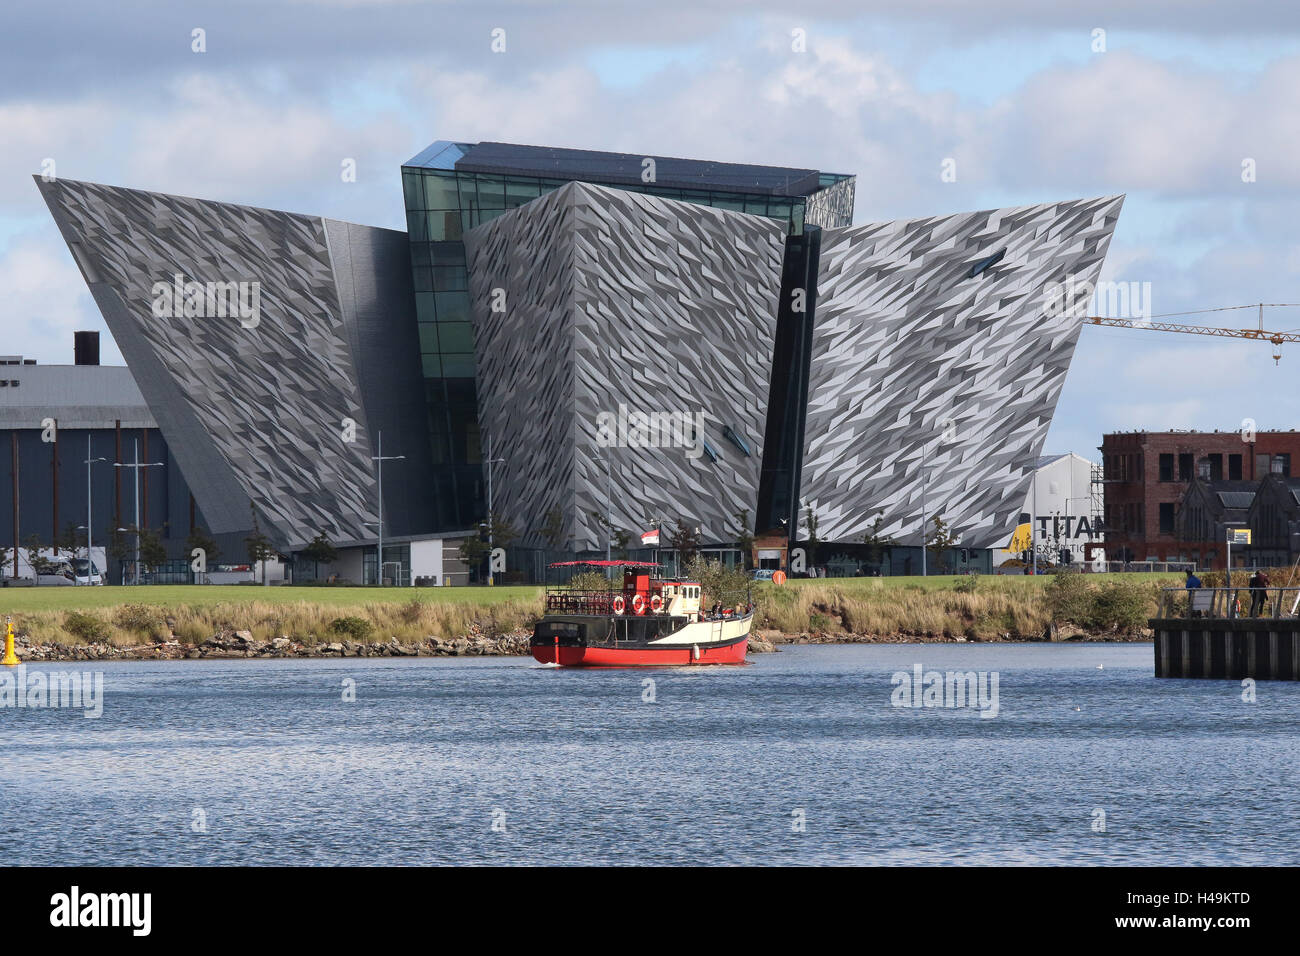 La construction du Titanic à Belfast Titanic Quarter.au premier plan est le 'Mona', un bateau utilisé pour Titanic Boat Tours. Banque D'Images